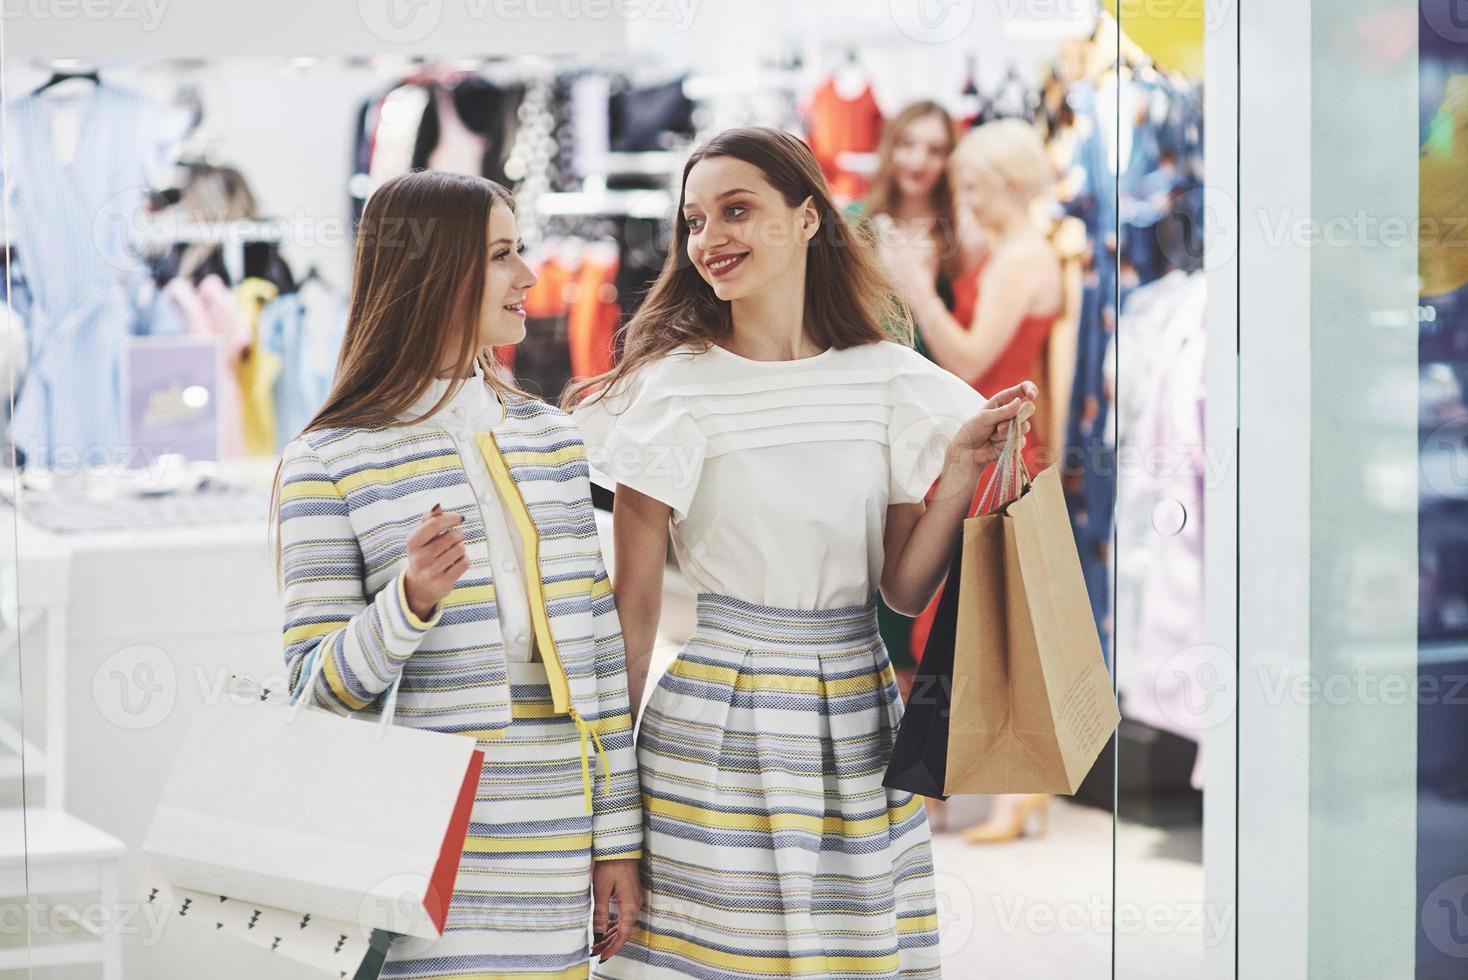 gran día para ir de compras. Dos hermosas mujeres con bolsas mirando el uno al otro con una sonrisa mientras camina en la tienda de ropa foto